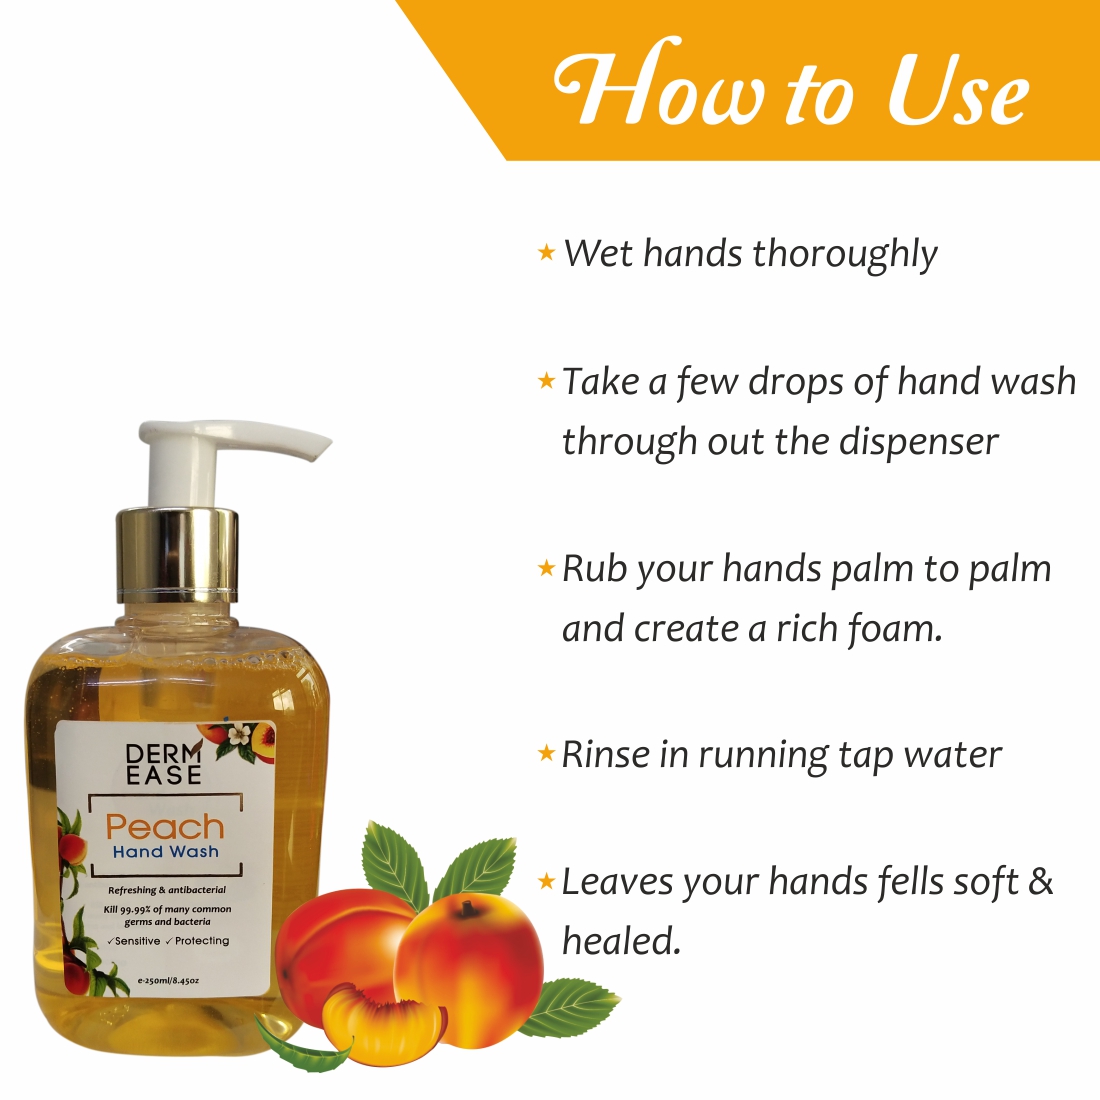 DERM EASE Peach Hand Wash